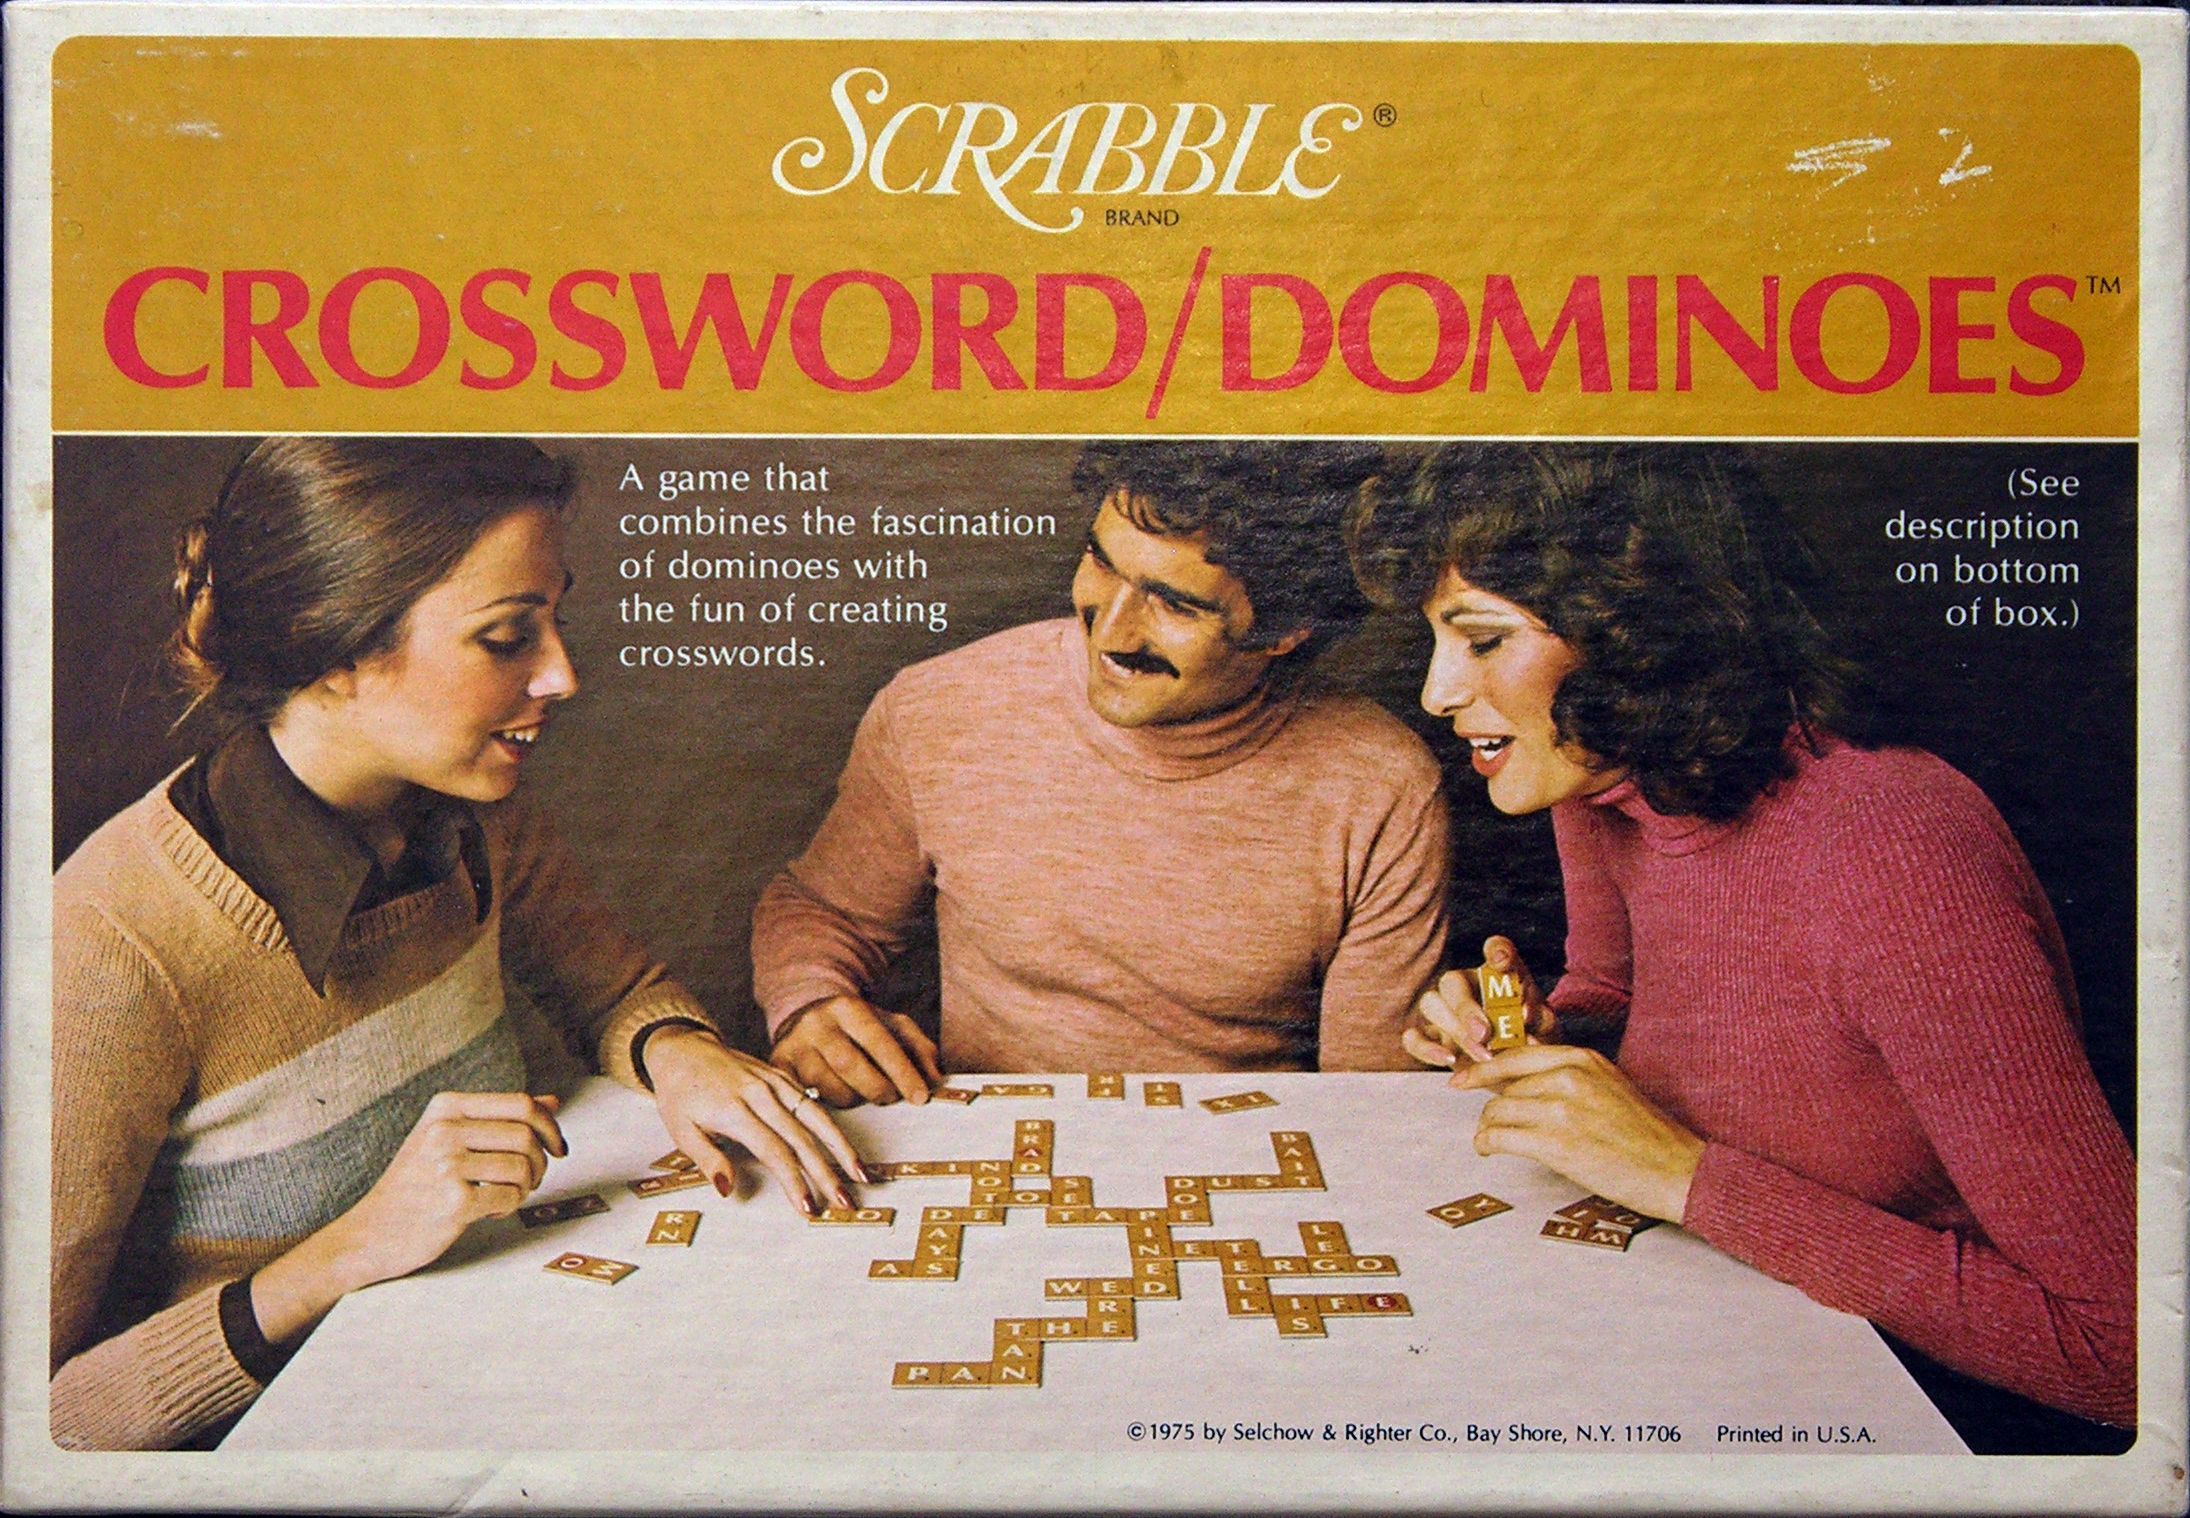 Scrabble Crossword / Dominoes